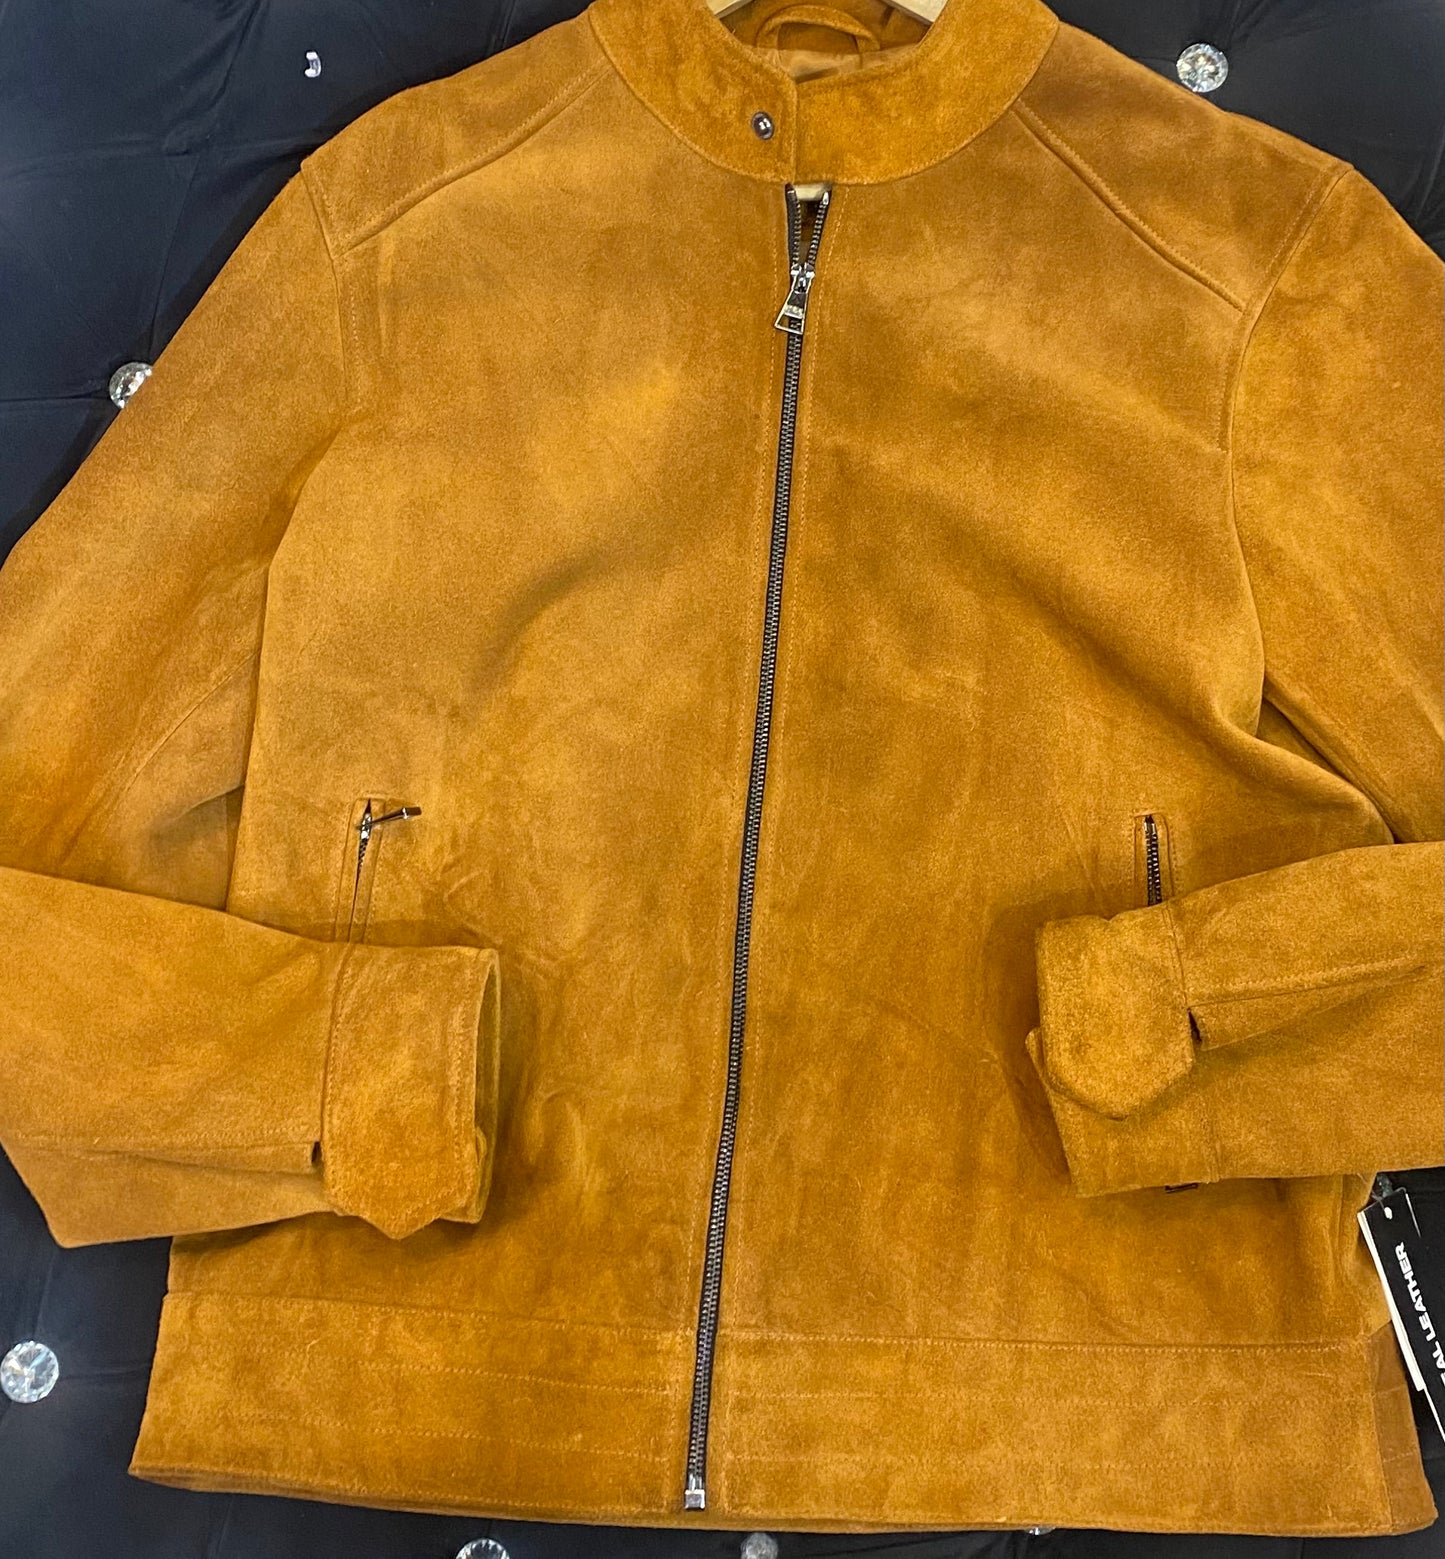 KAR RAK Brown Colour Suede Leather Men’s Heavy Jacket